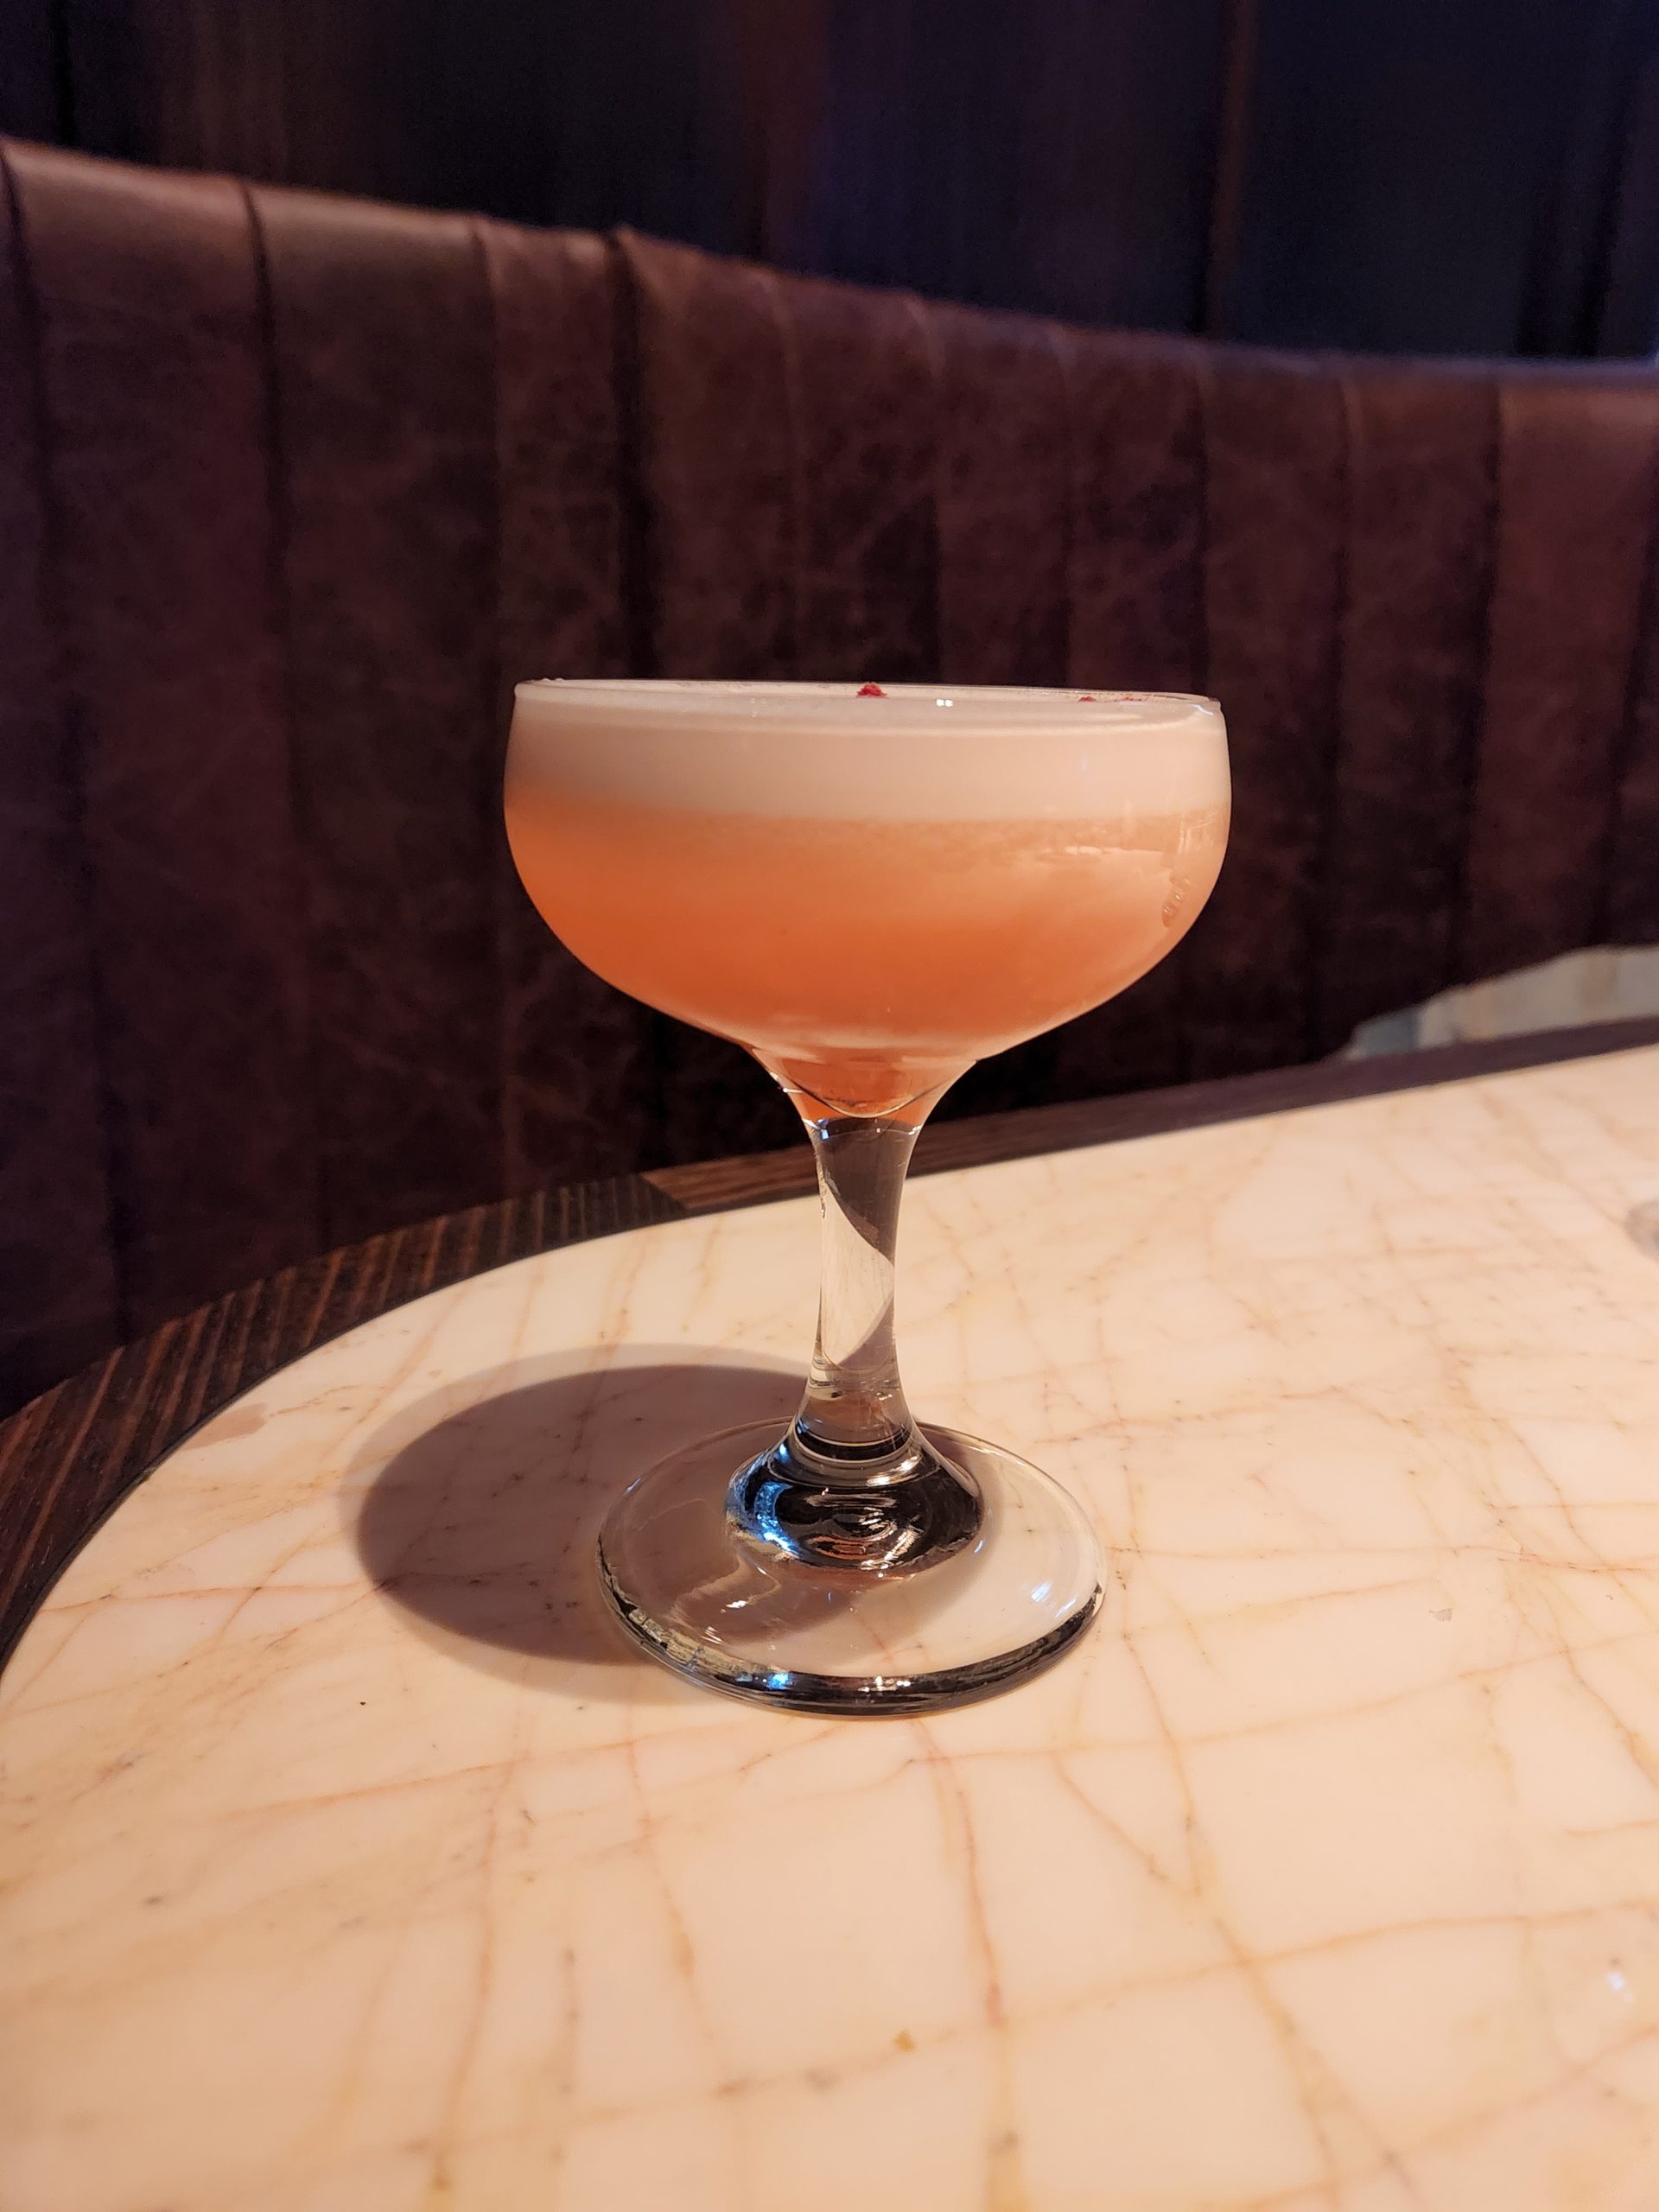 A Clover Club Cocktail on a bar table.